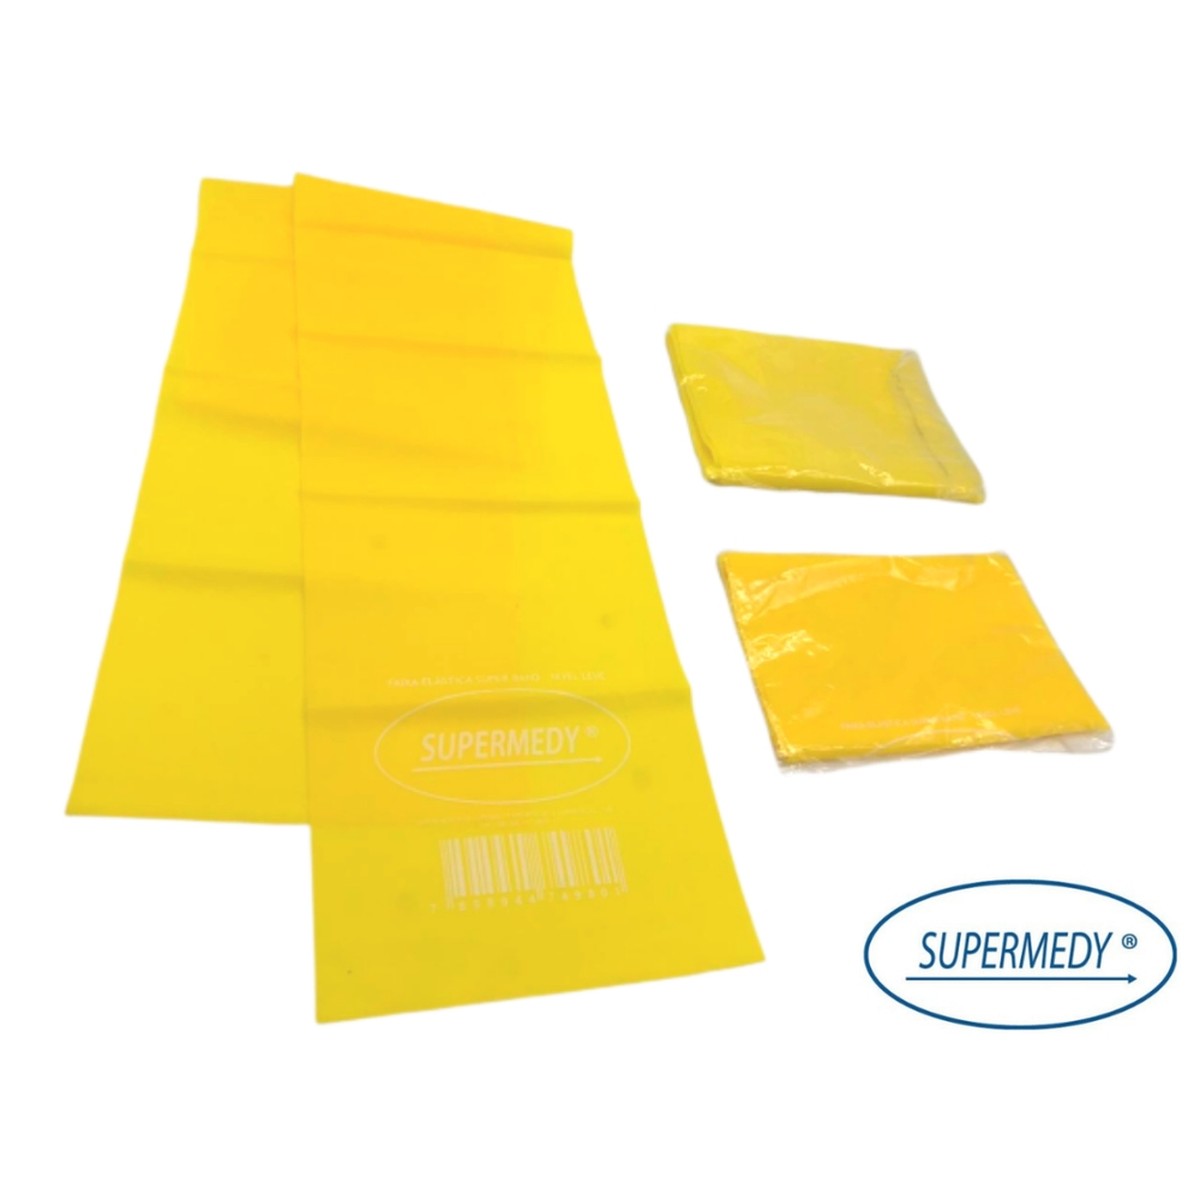 Foto do produto Faixa Super Band elástica nível leve (amarela)